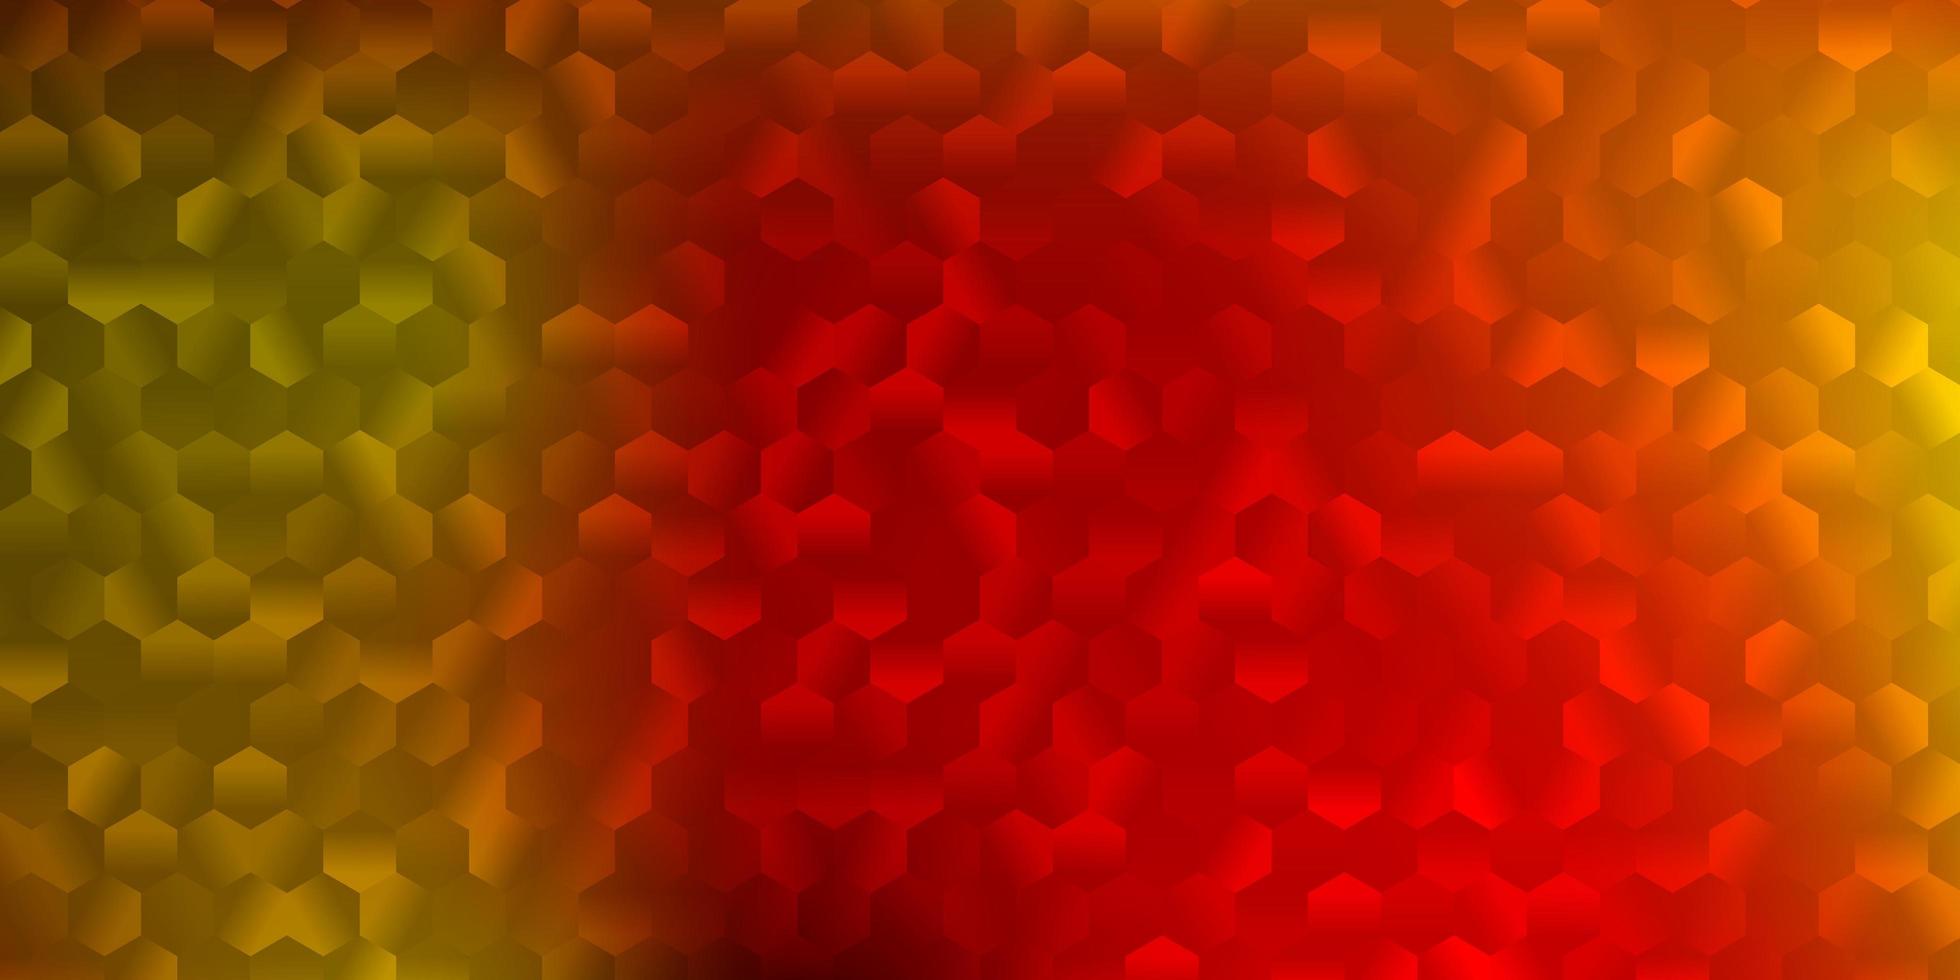 fond de vecteur rouge et jaune clair avec des formes hexagonales.